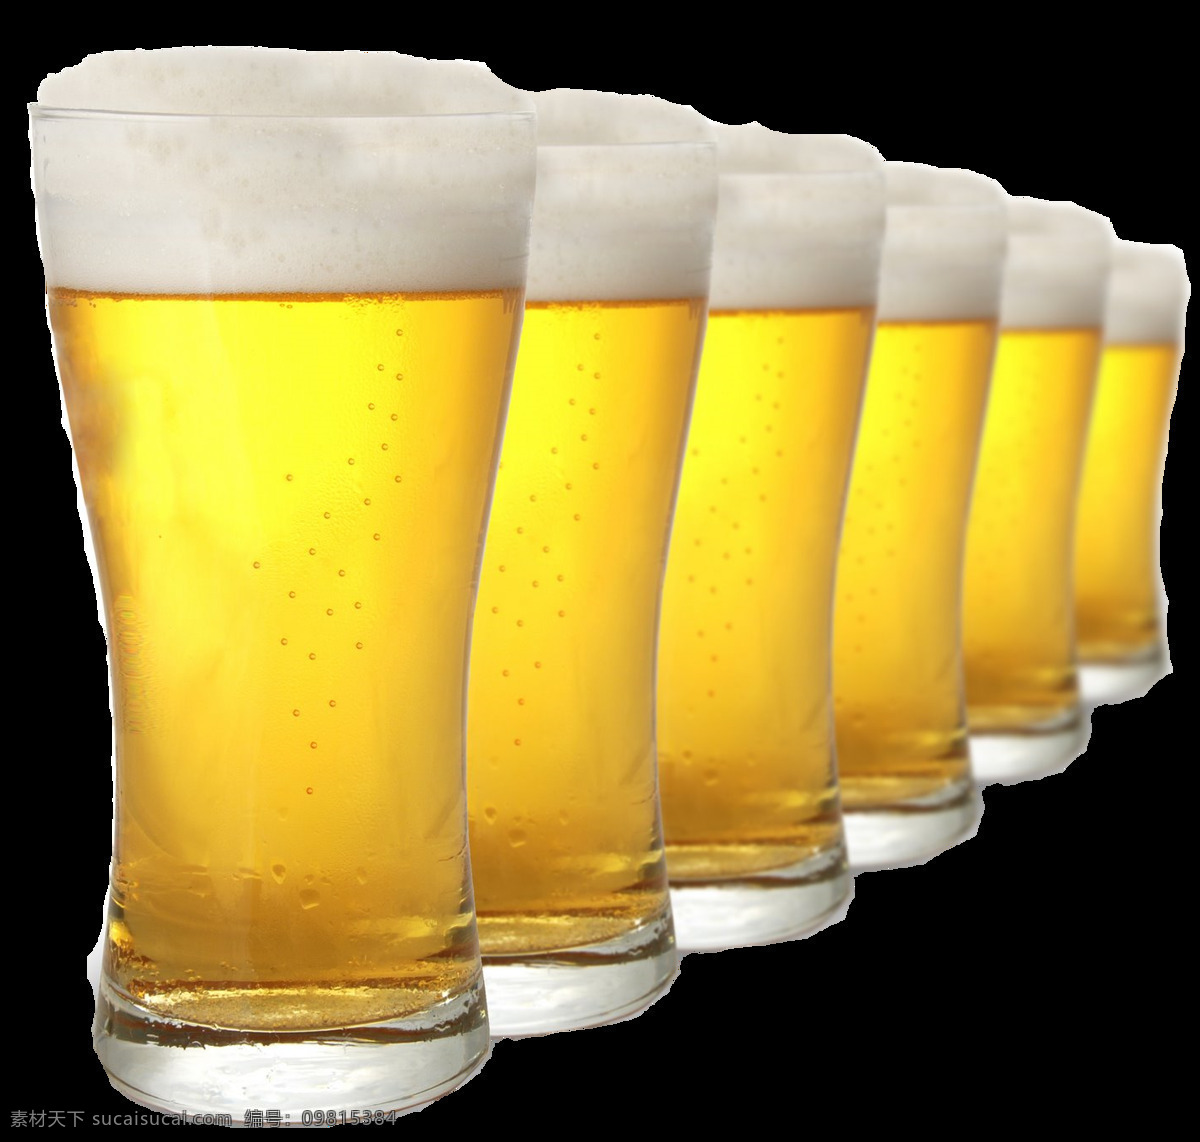 多个 啤酒杯 实物 元素 图案 啤酒 啤酒元素 一排啤酒杯 啤酒杯图案 手举啤酒杯 装满的啤酒杯 啤酒装饰图案 各类啤酒杯